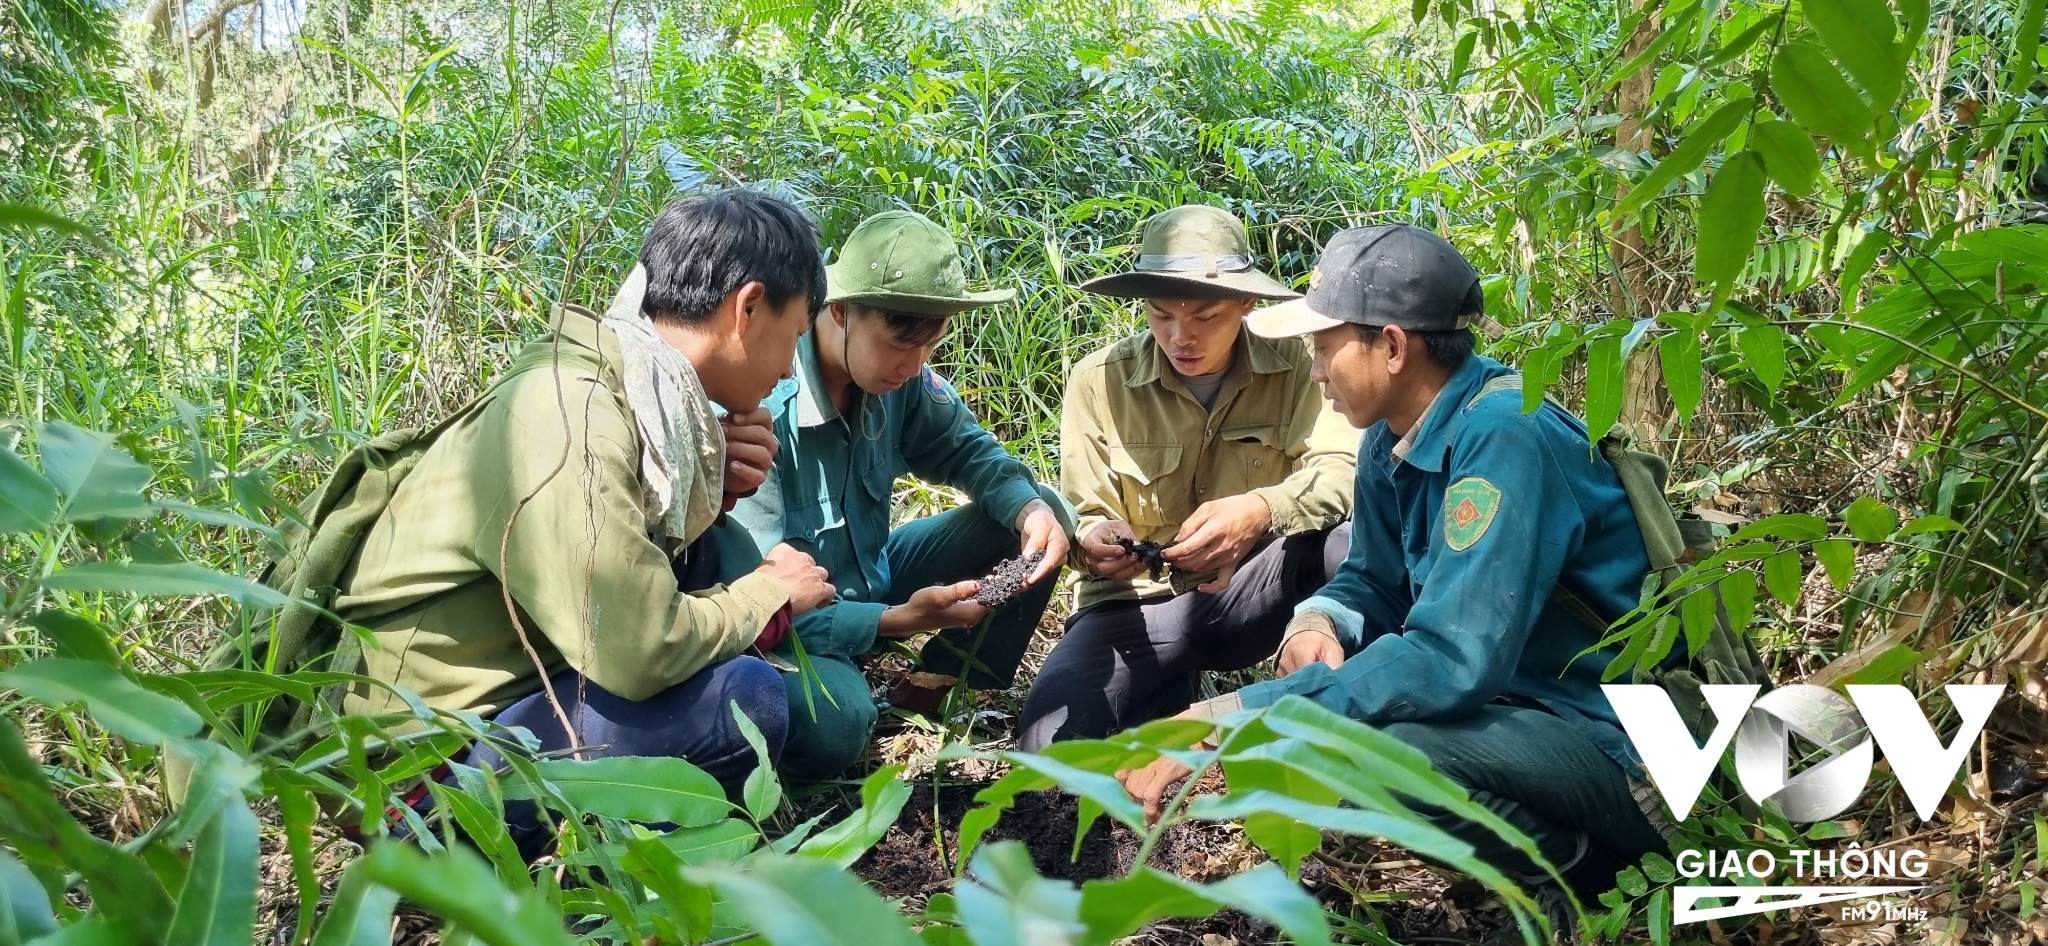 Hiện diện tích rừng U Minh Hạ ( Cà Mau) còn 43 nghìn hecta. Công tác phòng, chống cháy rừng ở đây được Chi cục Kiểm lâm Cà Mau triển khai từ tháng 11 năm trước đến hết mùa mưa năm sau.